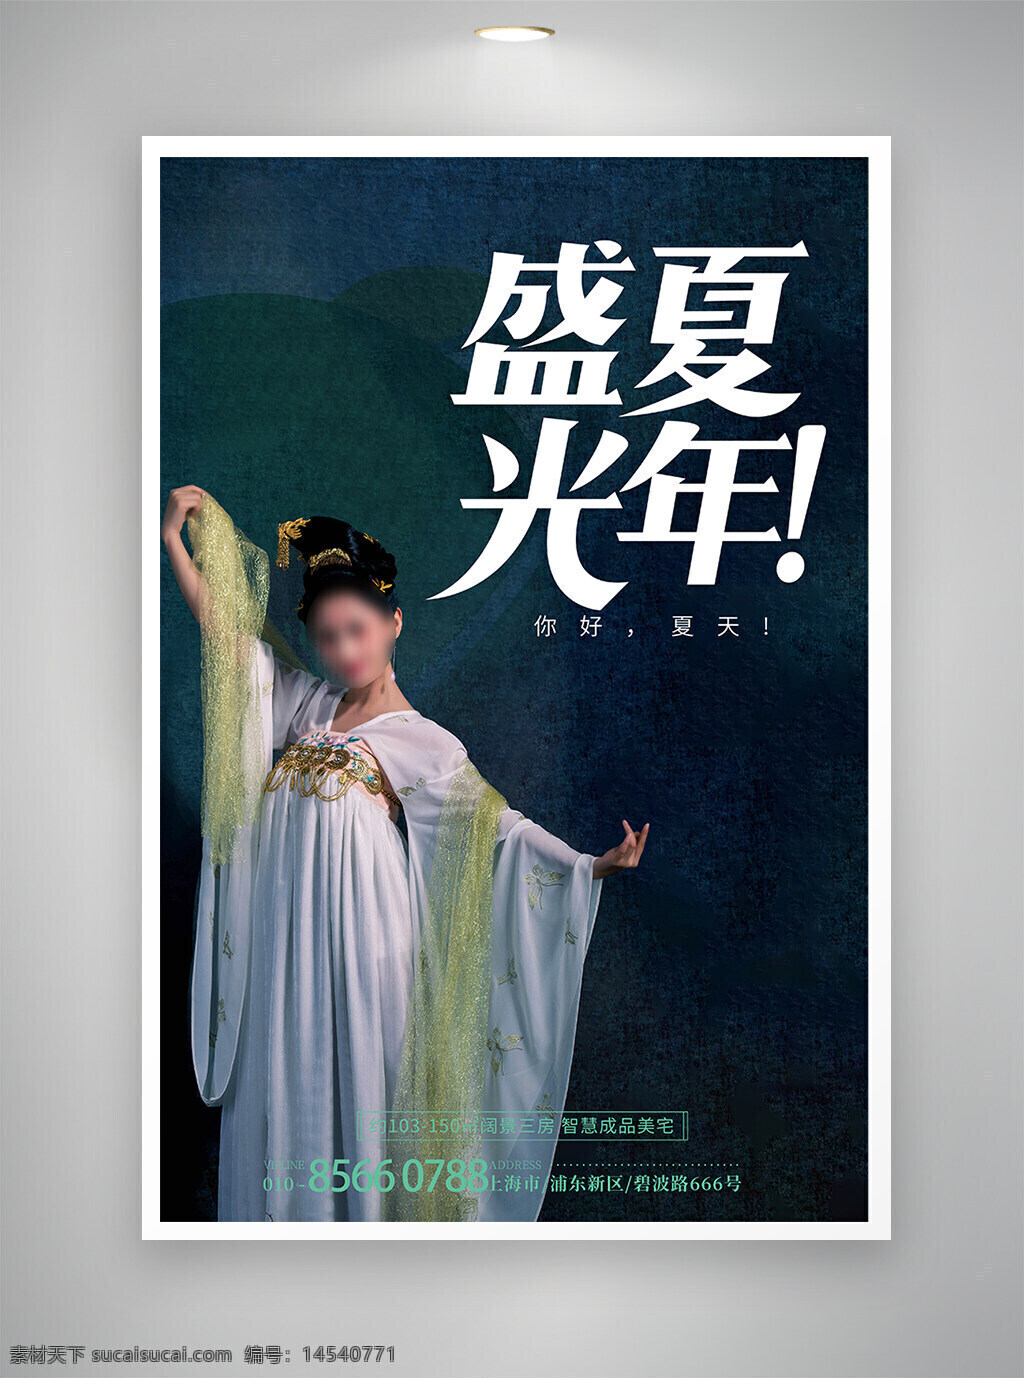 促销海报 中国风海报 节日海报 夏天海报